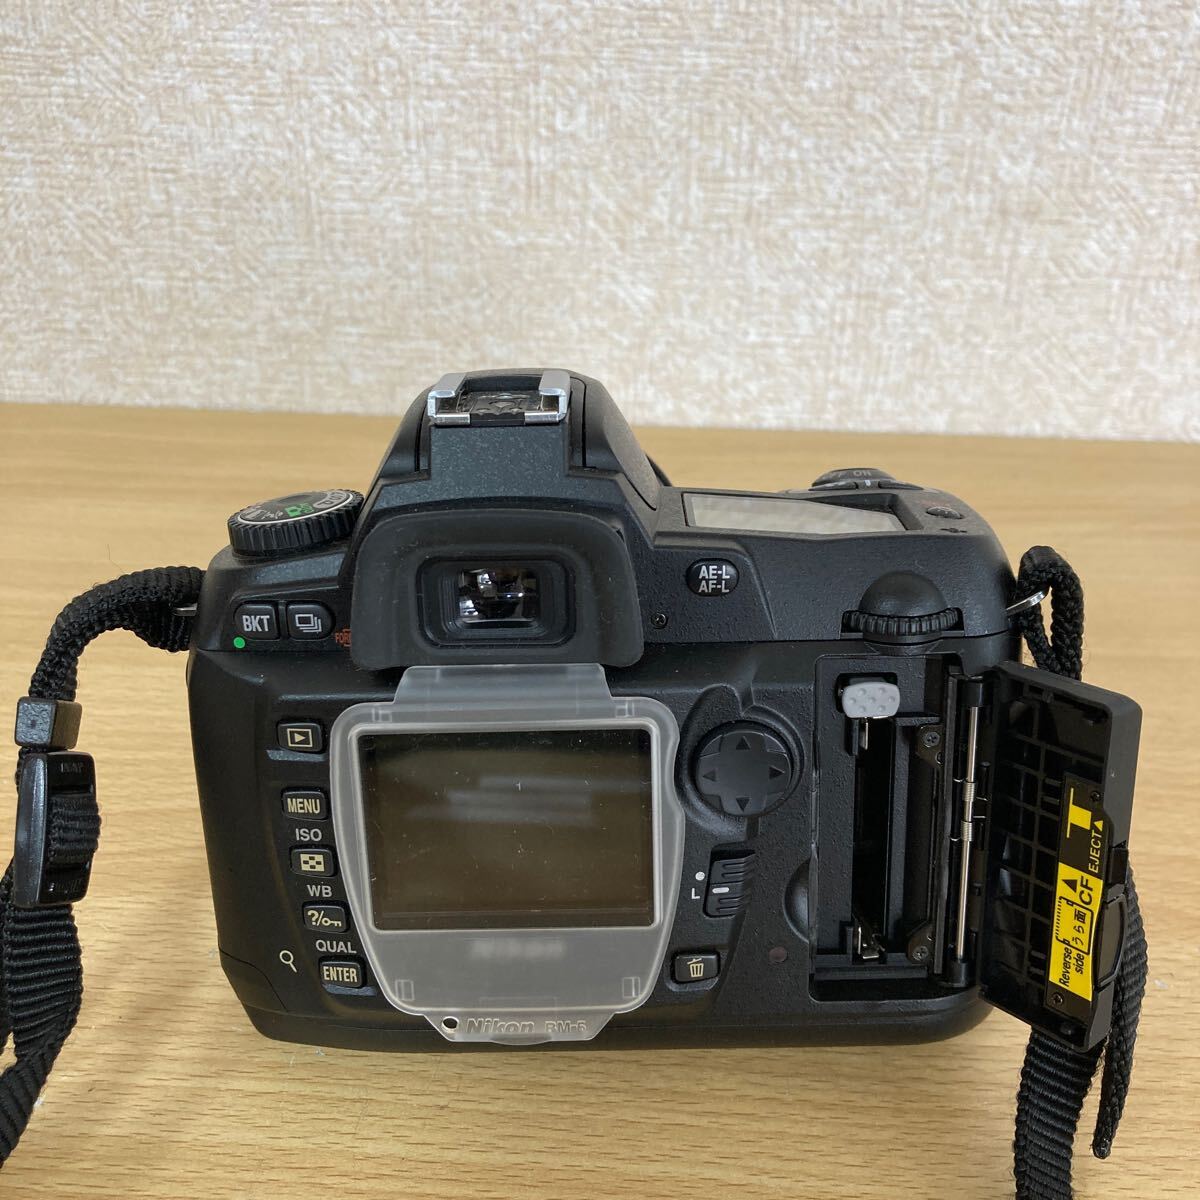 Nikon ニコン D70s レンズ SIGMA COMPACT HYPERZOOM 28-200mm 1:3.5-5.6 MACRO デジタルカメラ デジタル一眼カメラ 4 リ サ ス 17_画像6